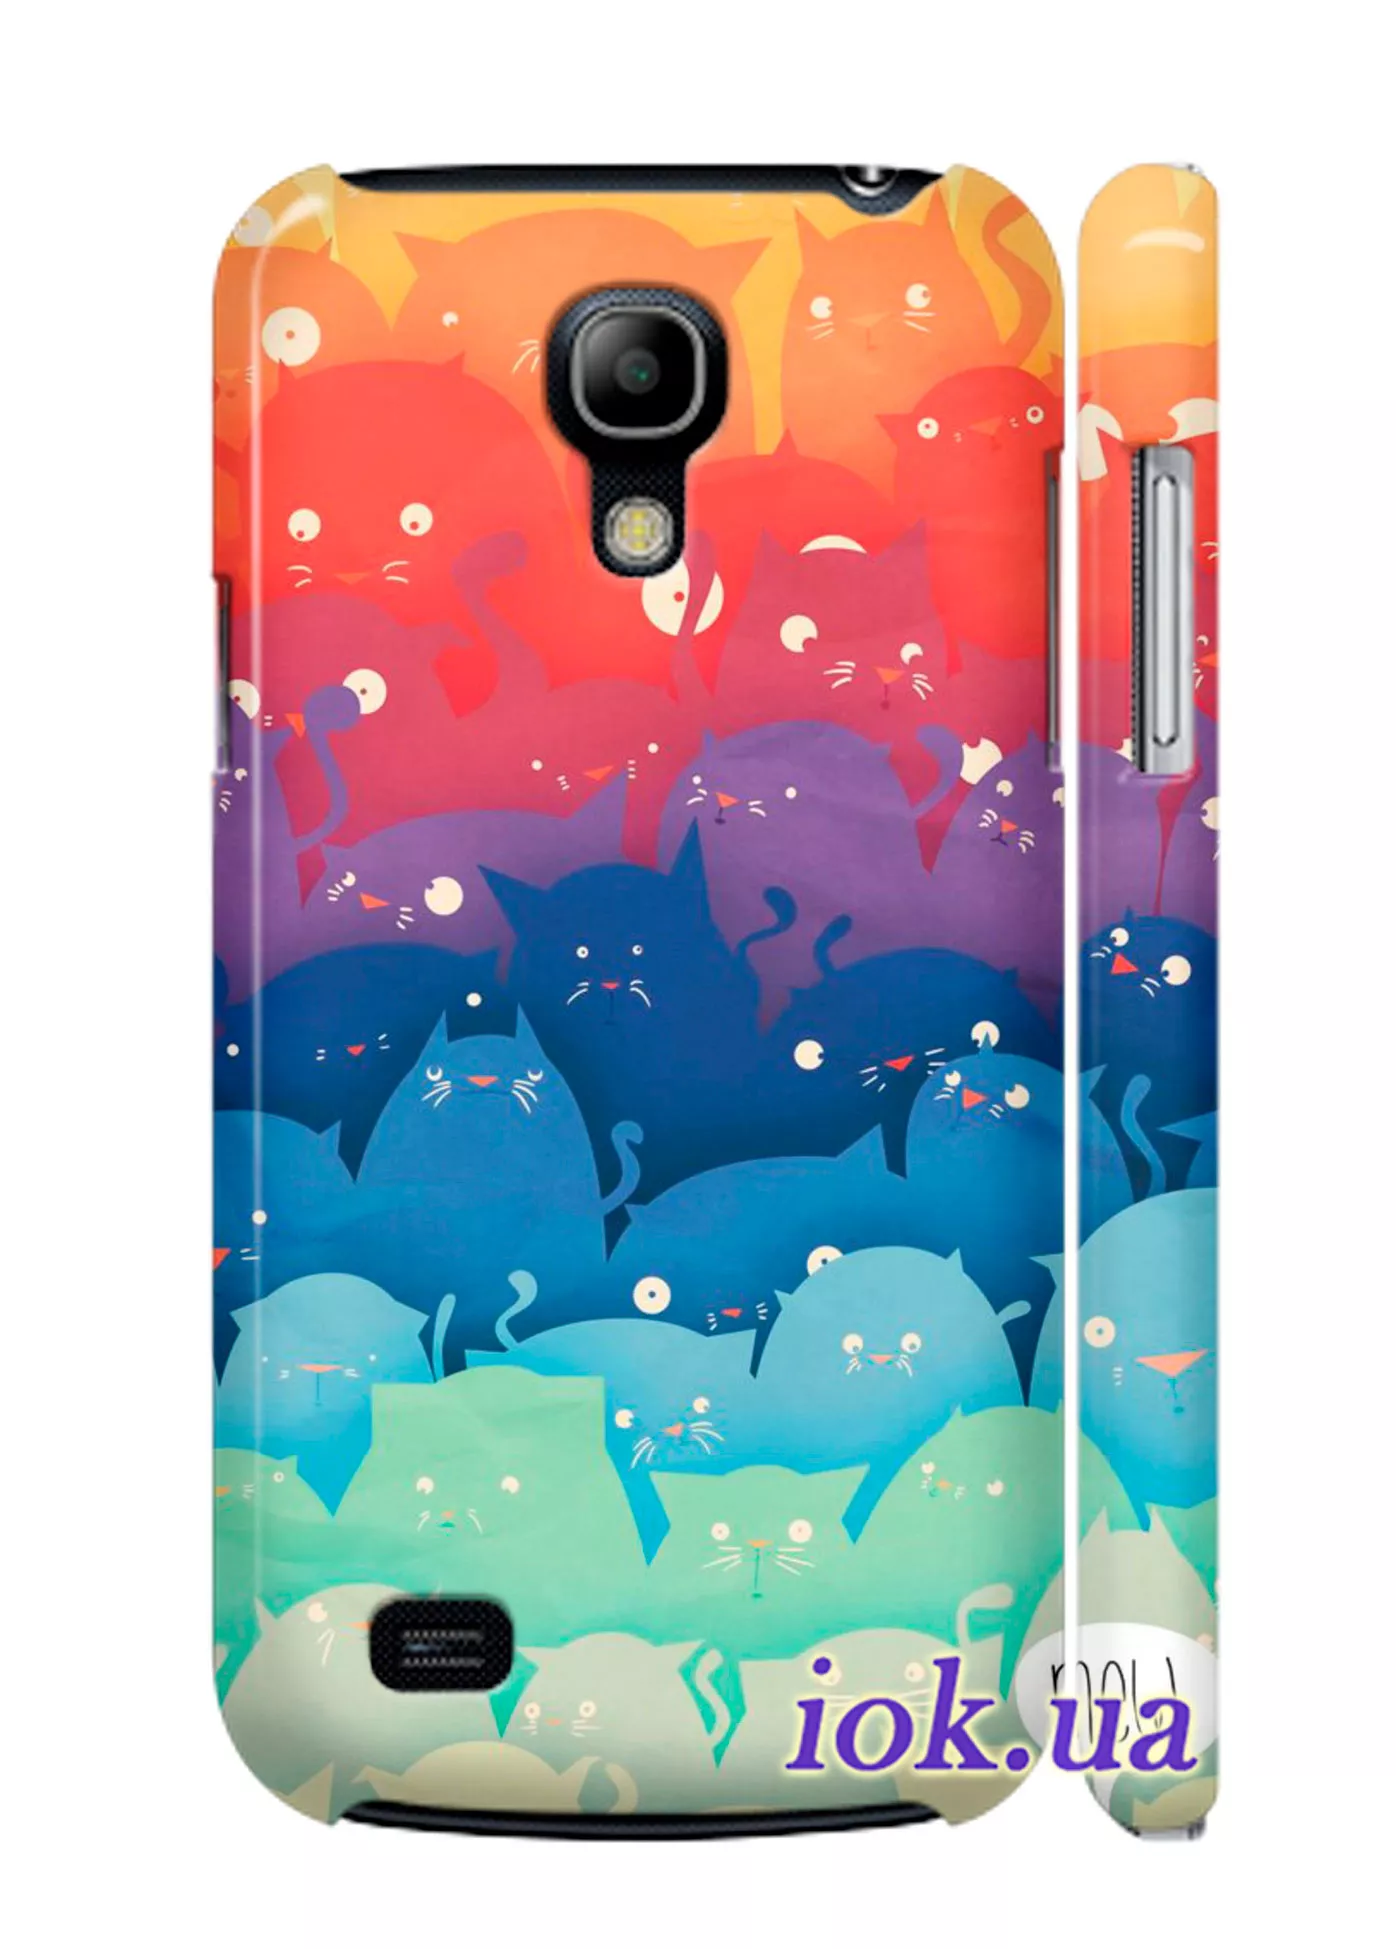 Чехол на Galaxy S4 mini - Разноцветные коты